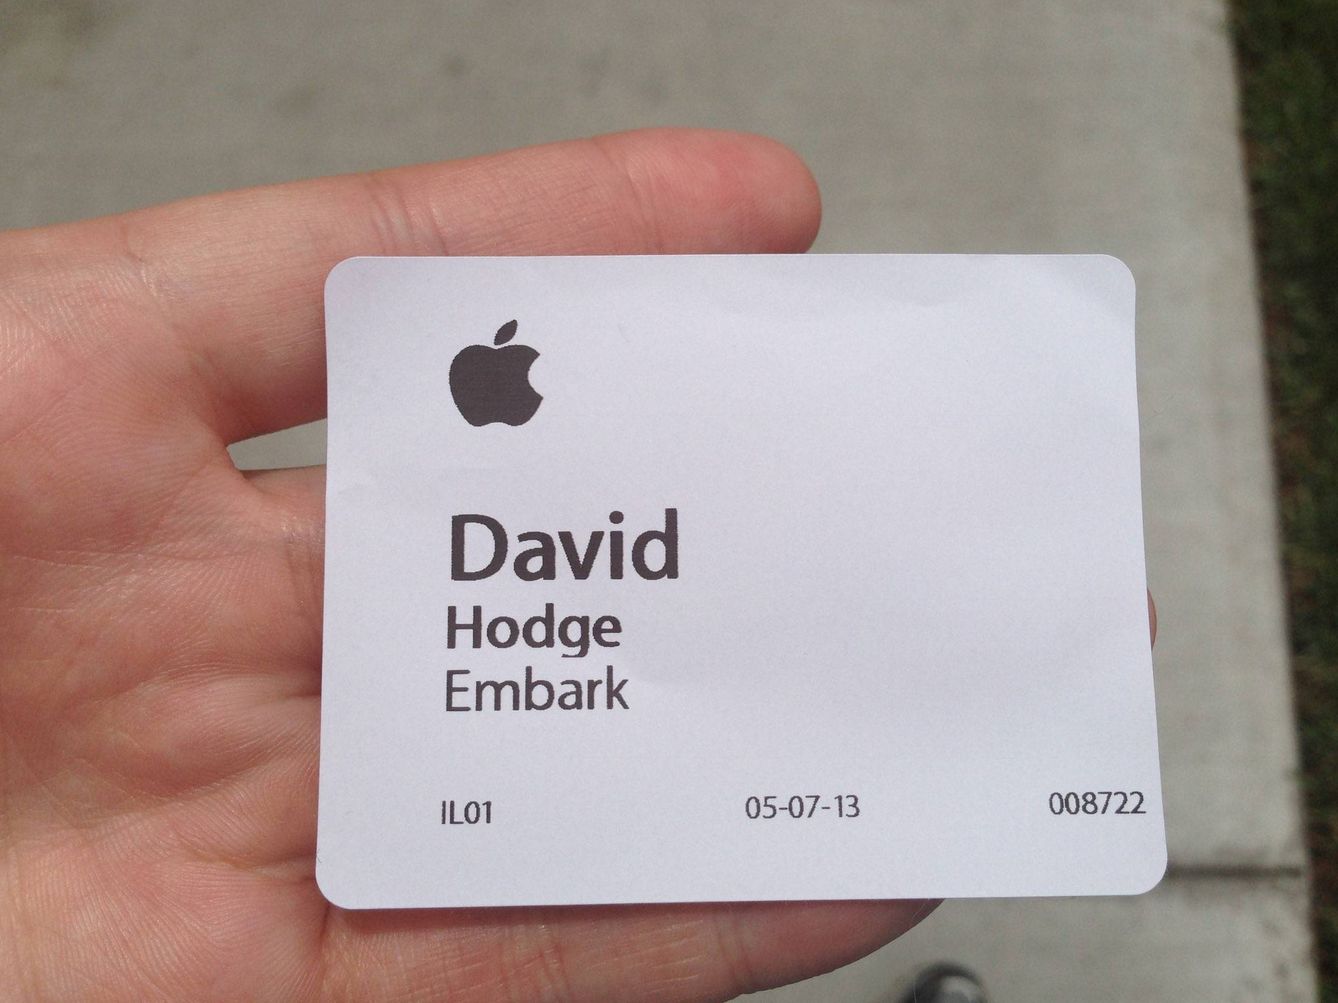 Tarjeta de visita de David Hodge para acceder a la sede de Apple.